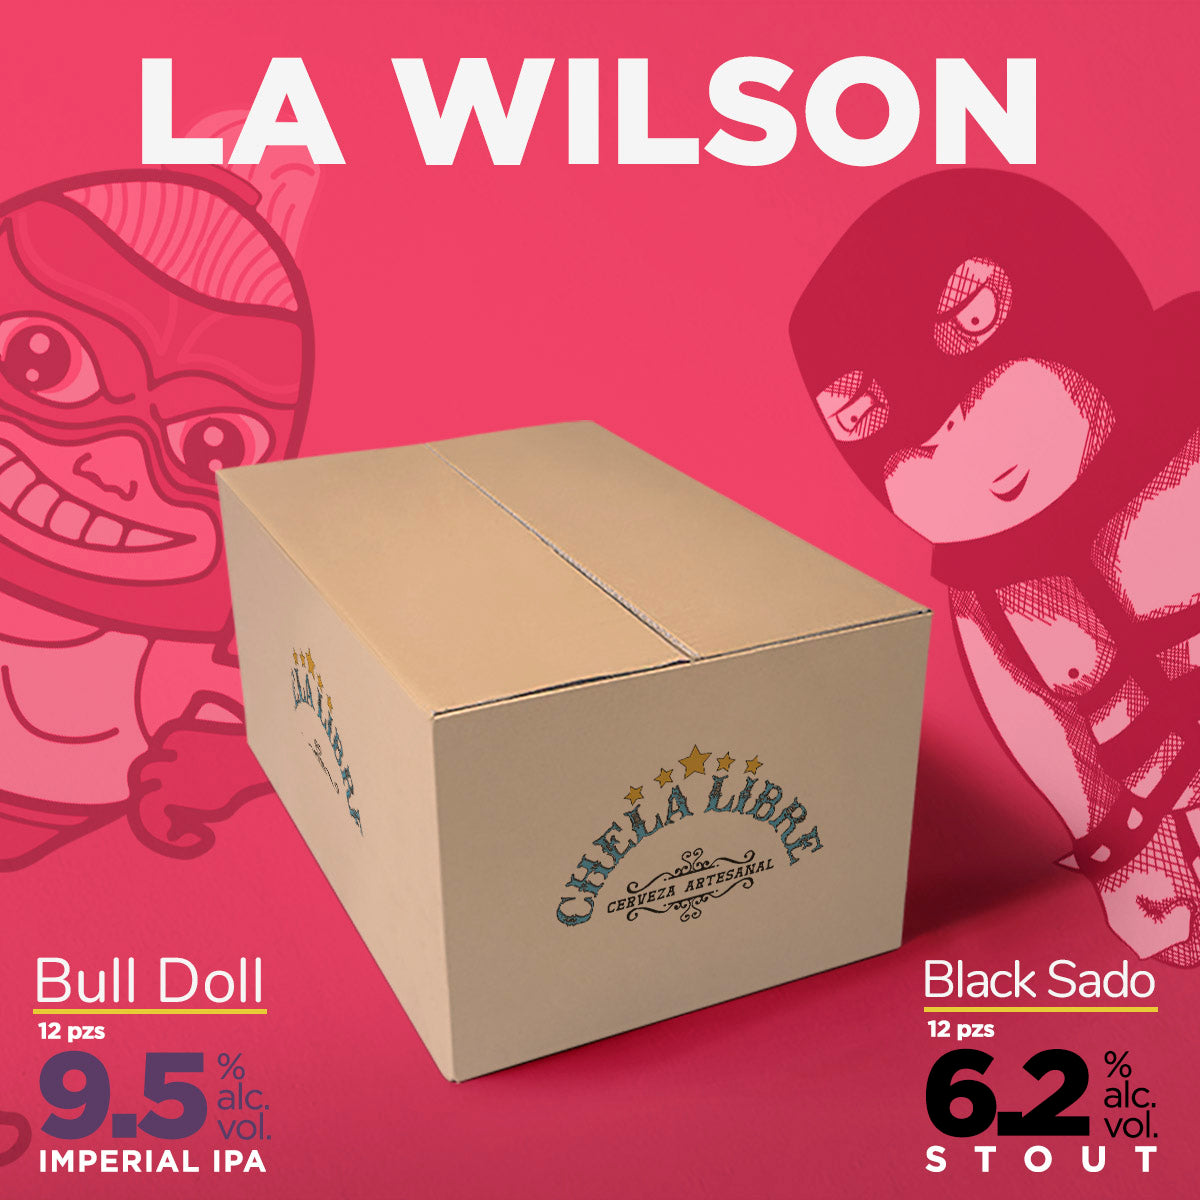 Wilson (Bull Doll vs Black Sado)